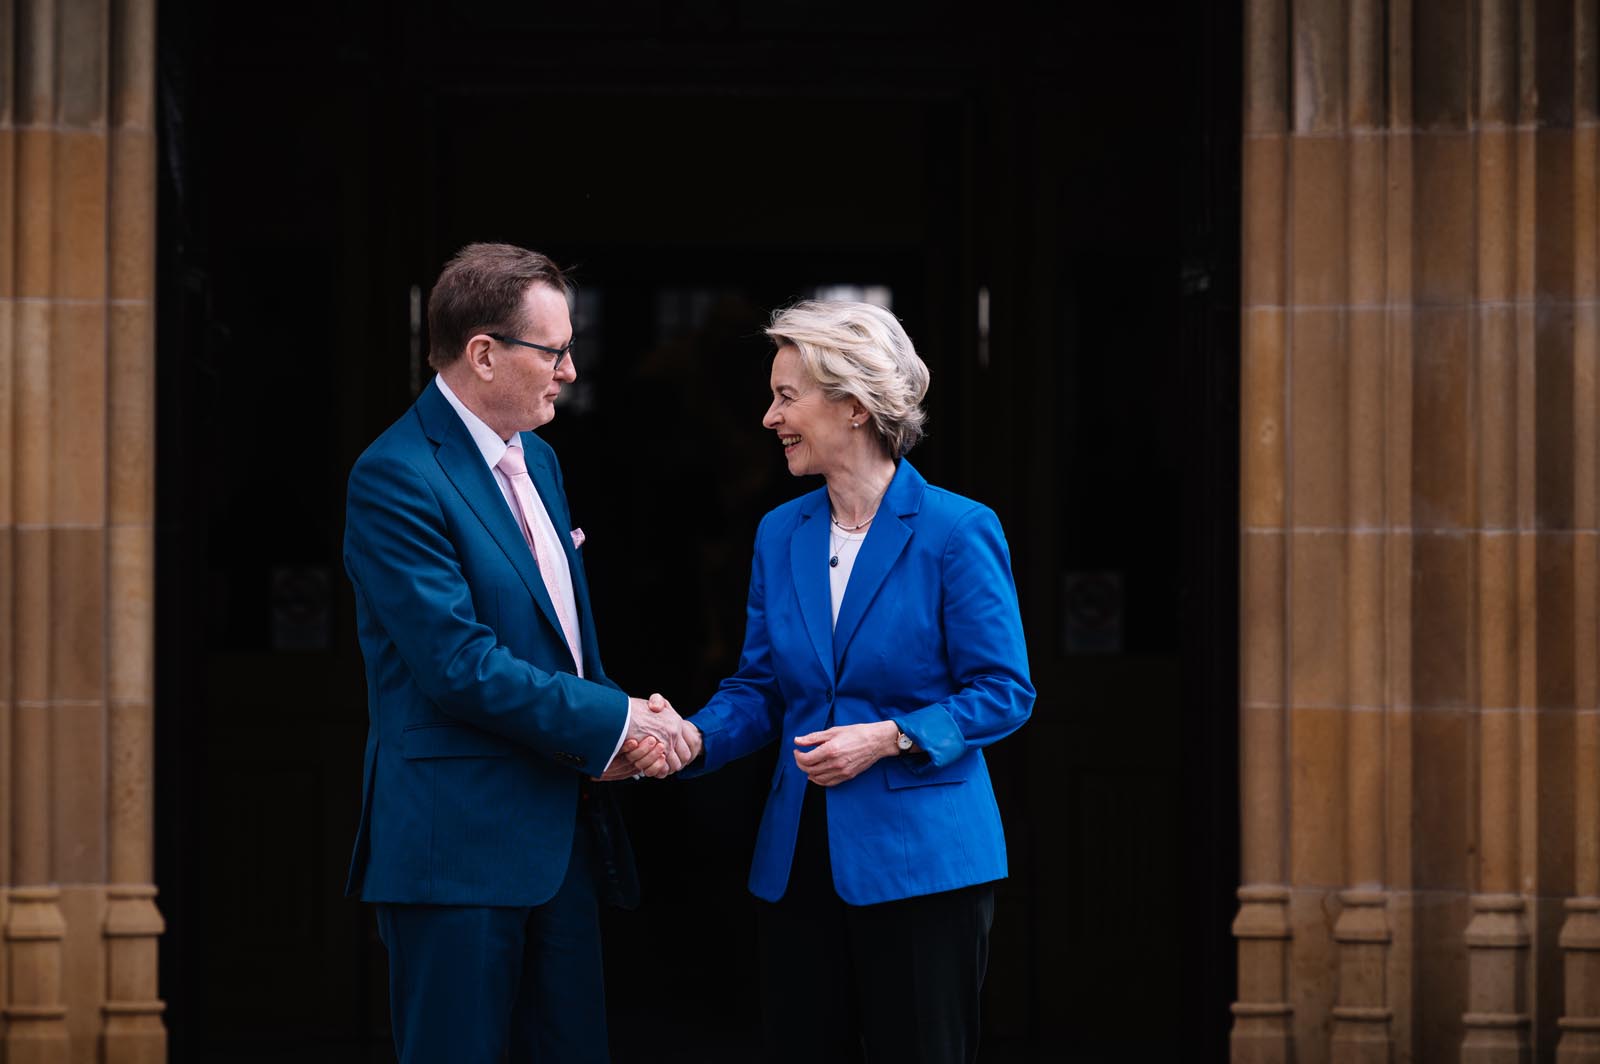 Professor Ian Greer shakes hands with European Commission President Ursula von der Leyen